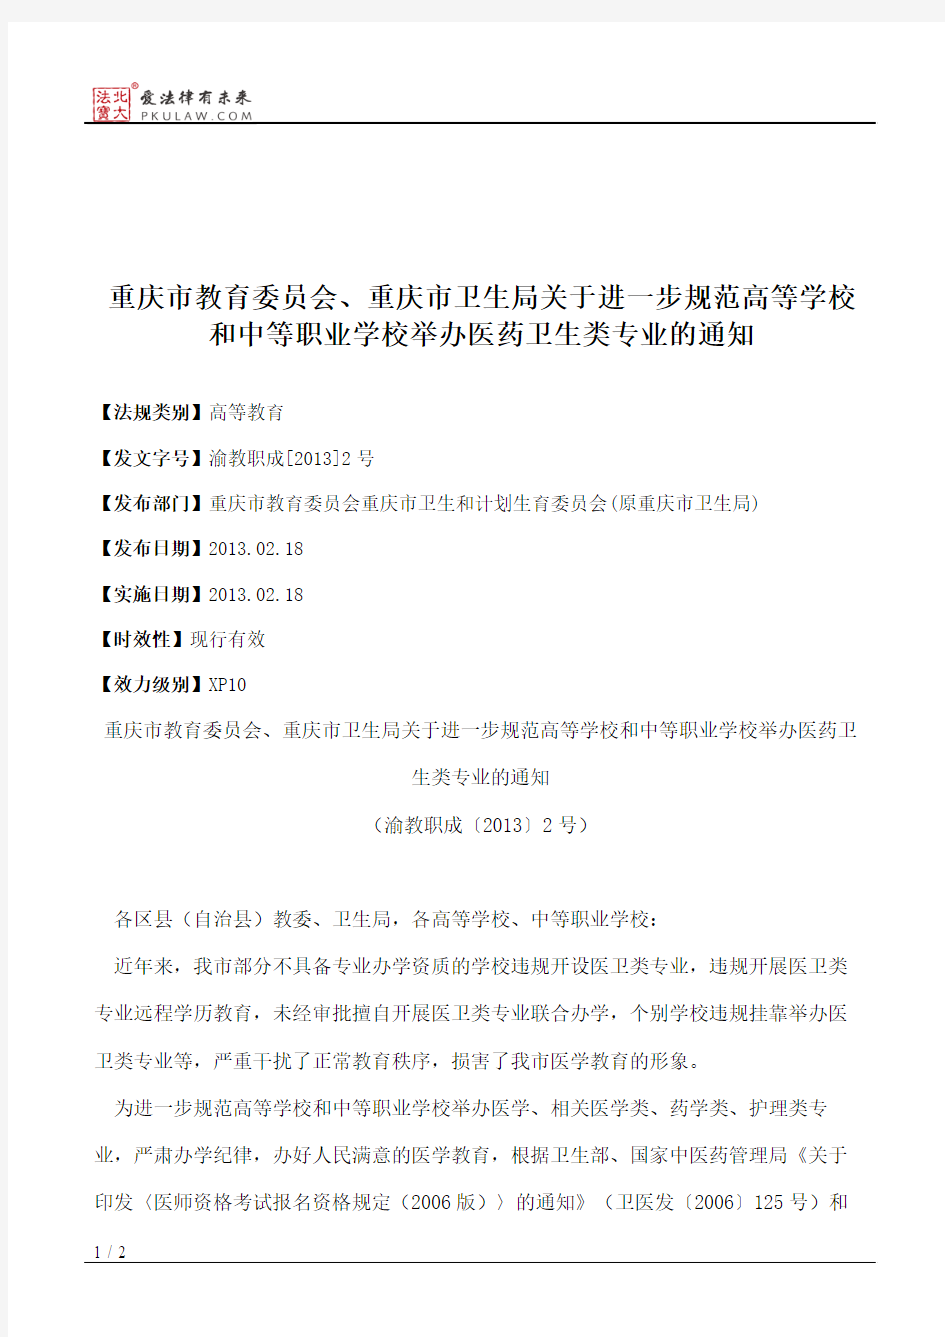 重庆市教育委员会、重庆市卫生局关于进一步规范高等学校和中等职